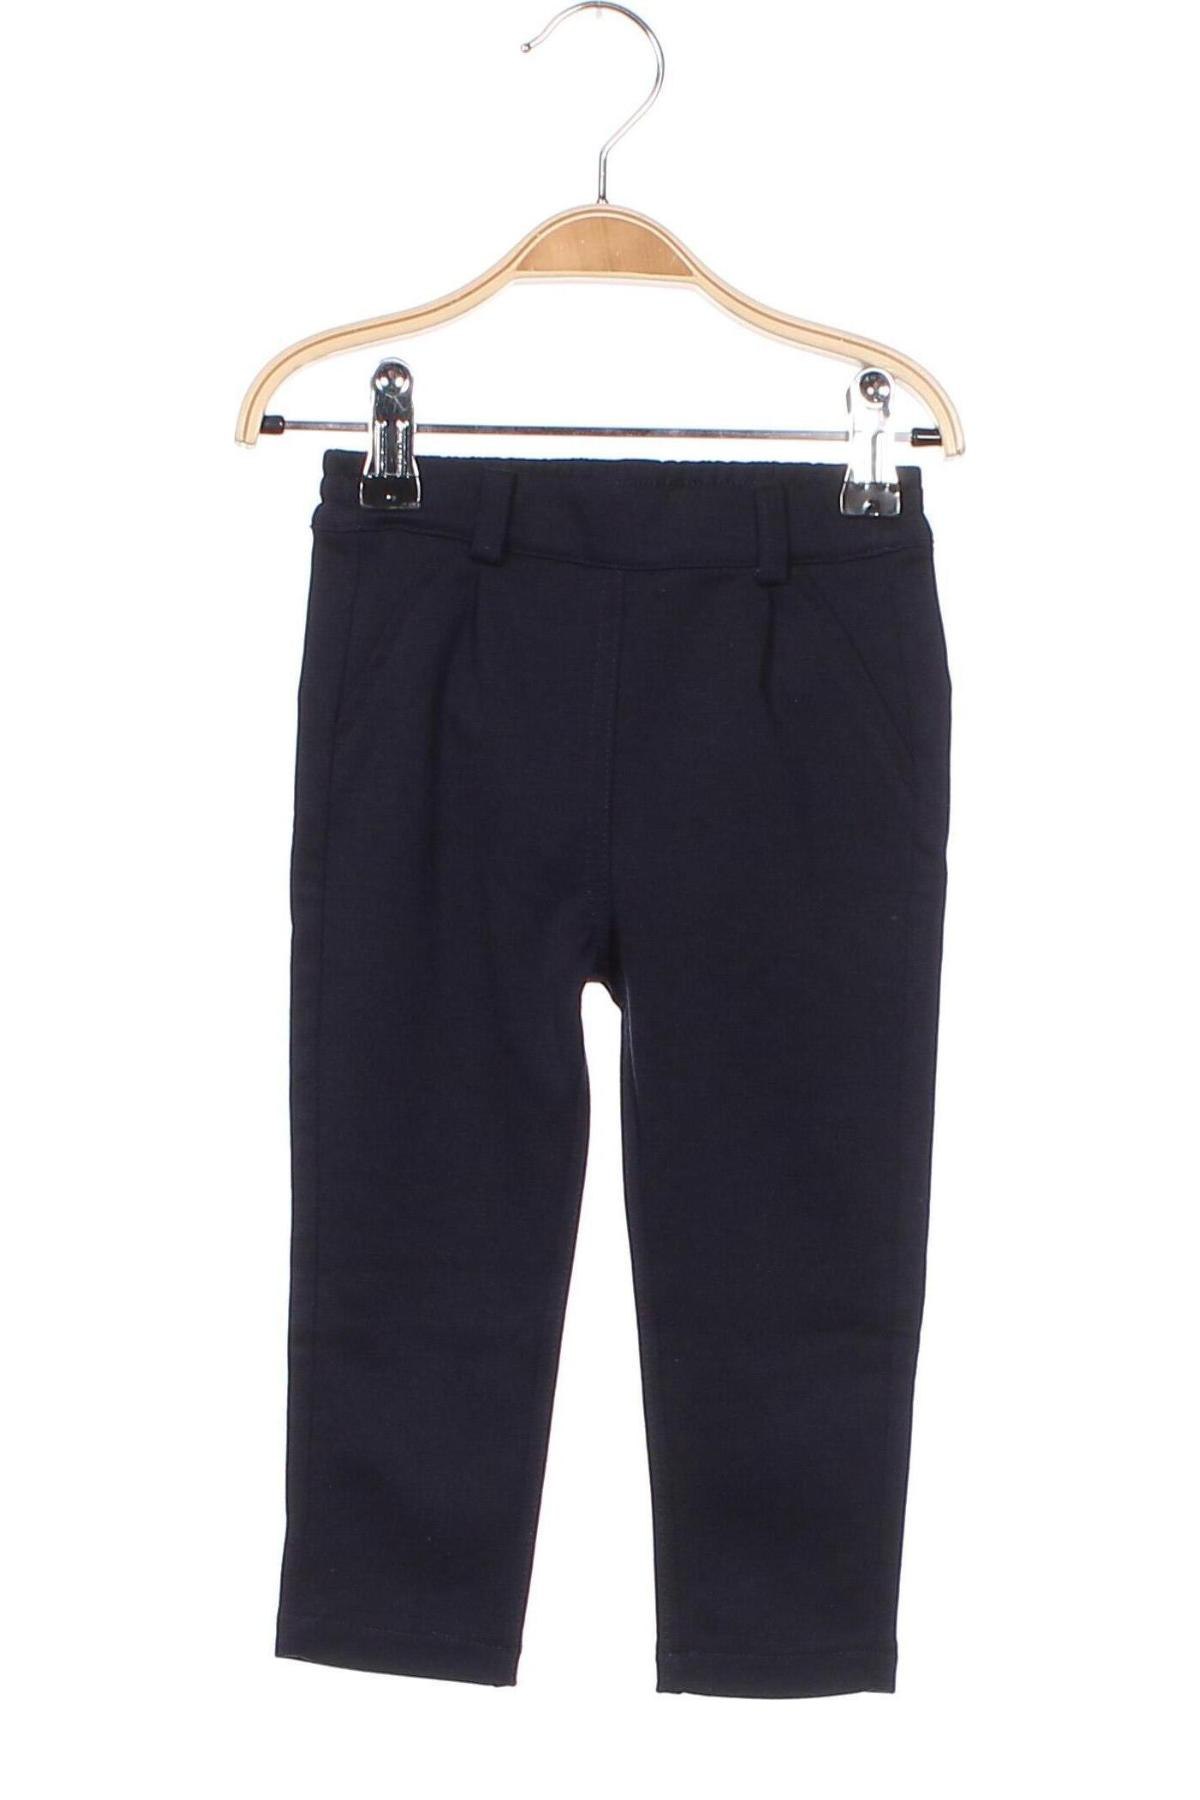 Pantaloni pentru copii S.Oliver, Mărime 9-12m/ 74-80 cm, Culoare Albastru, Preț 25,26 Lei